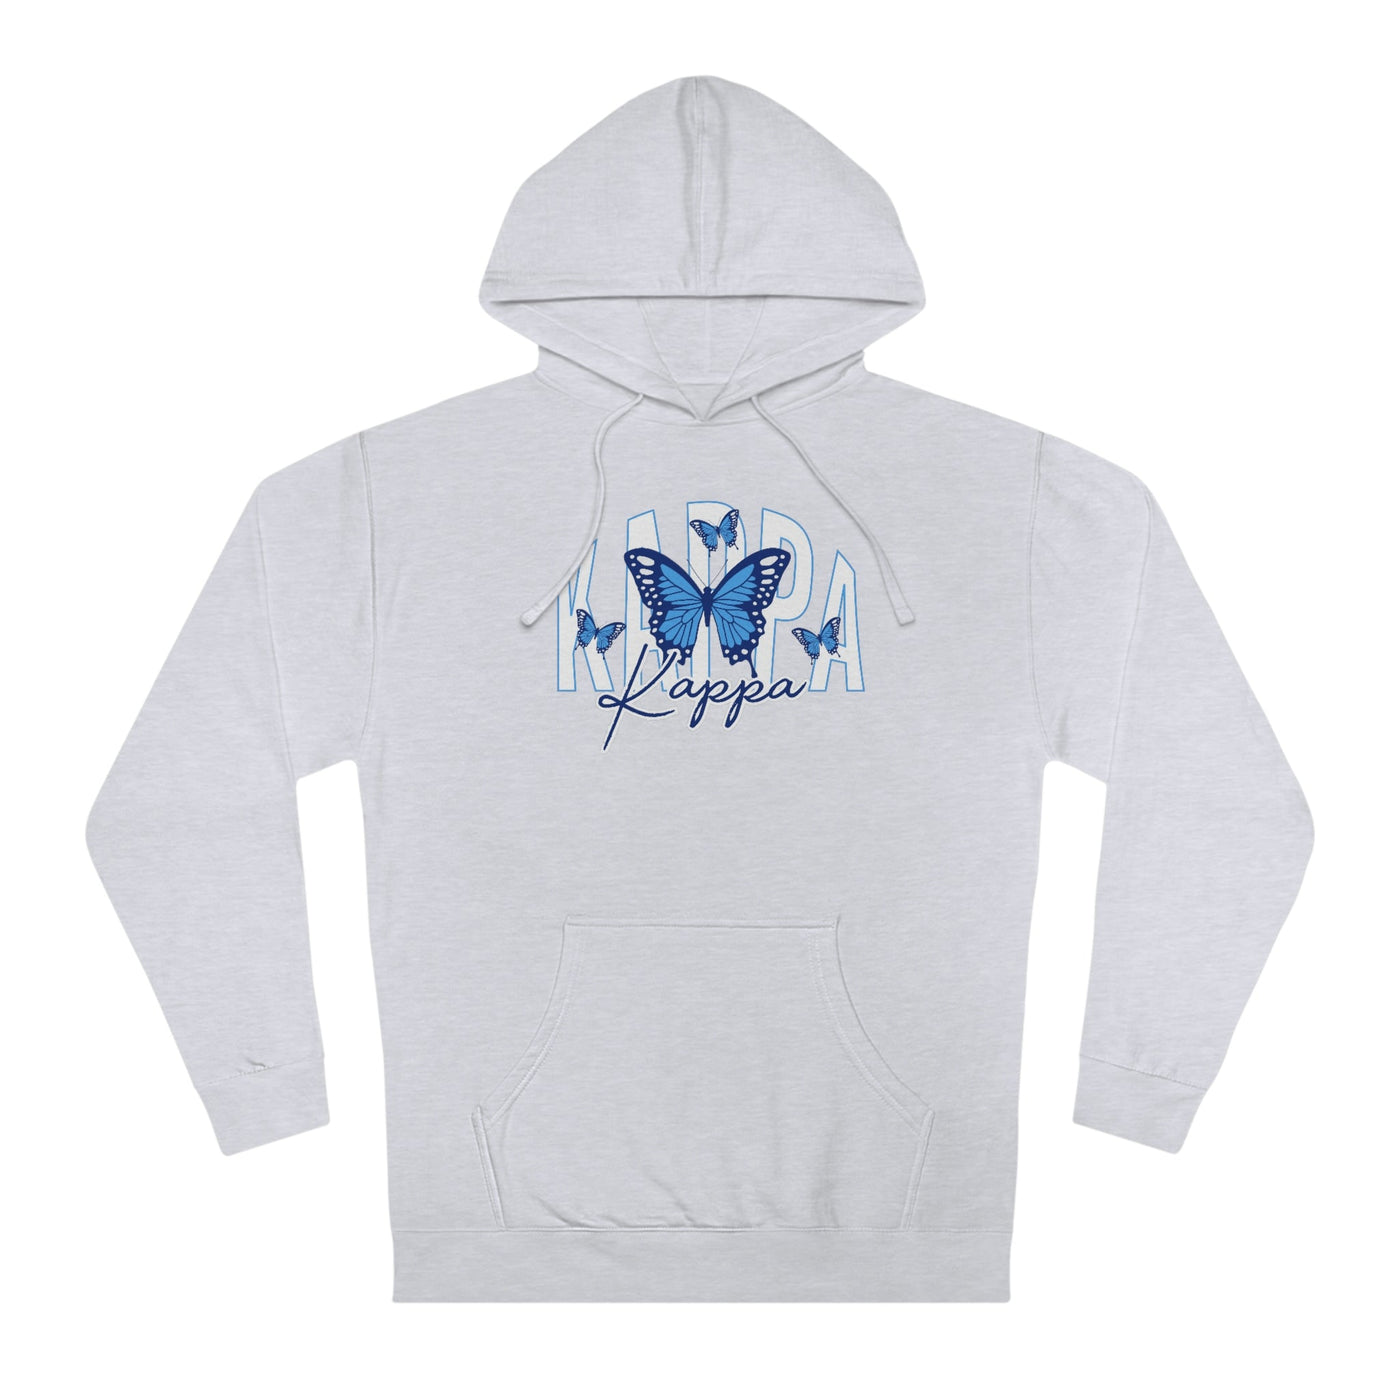 Kappa Kappa Gamma Baby Blue Butterfly Cute Sorority Sweatshirt